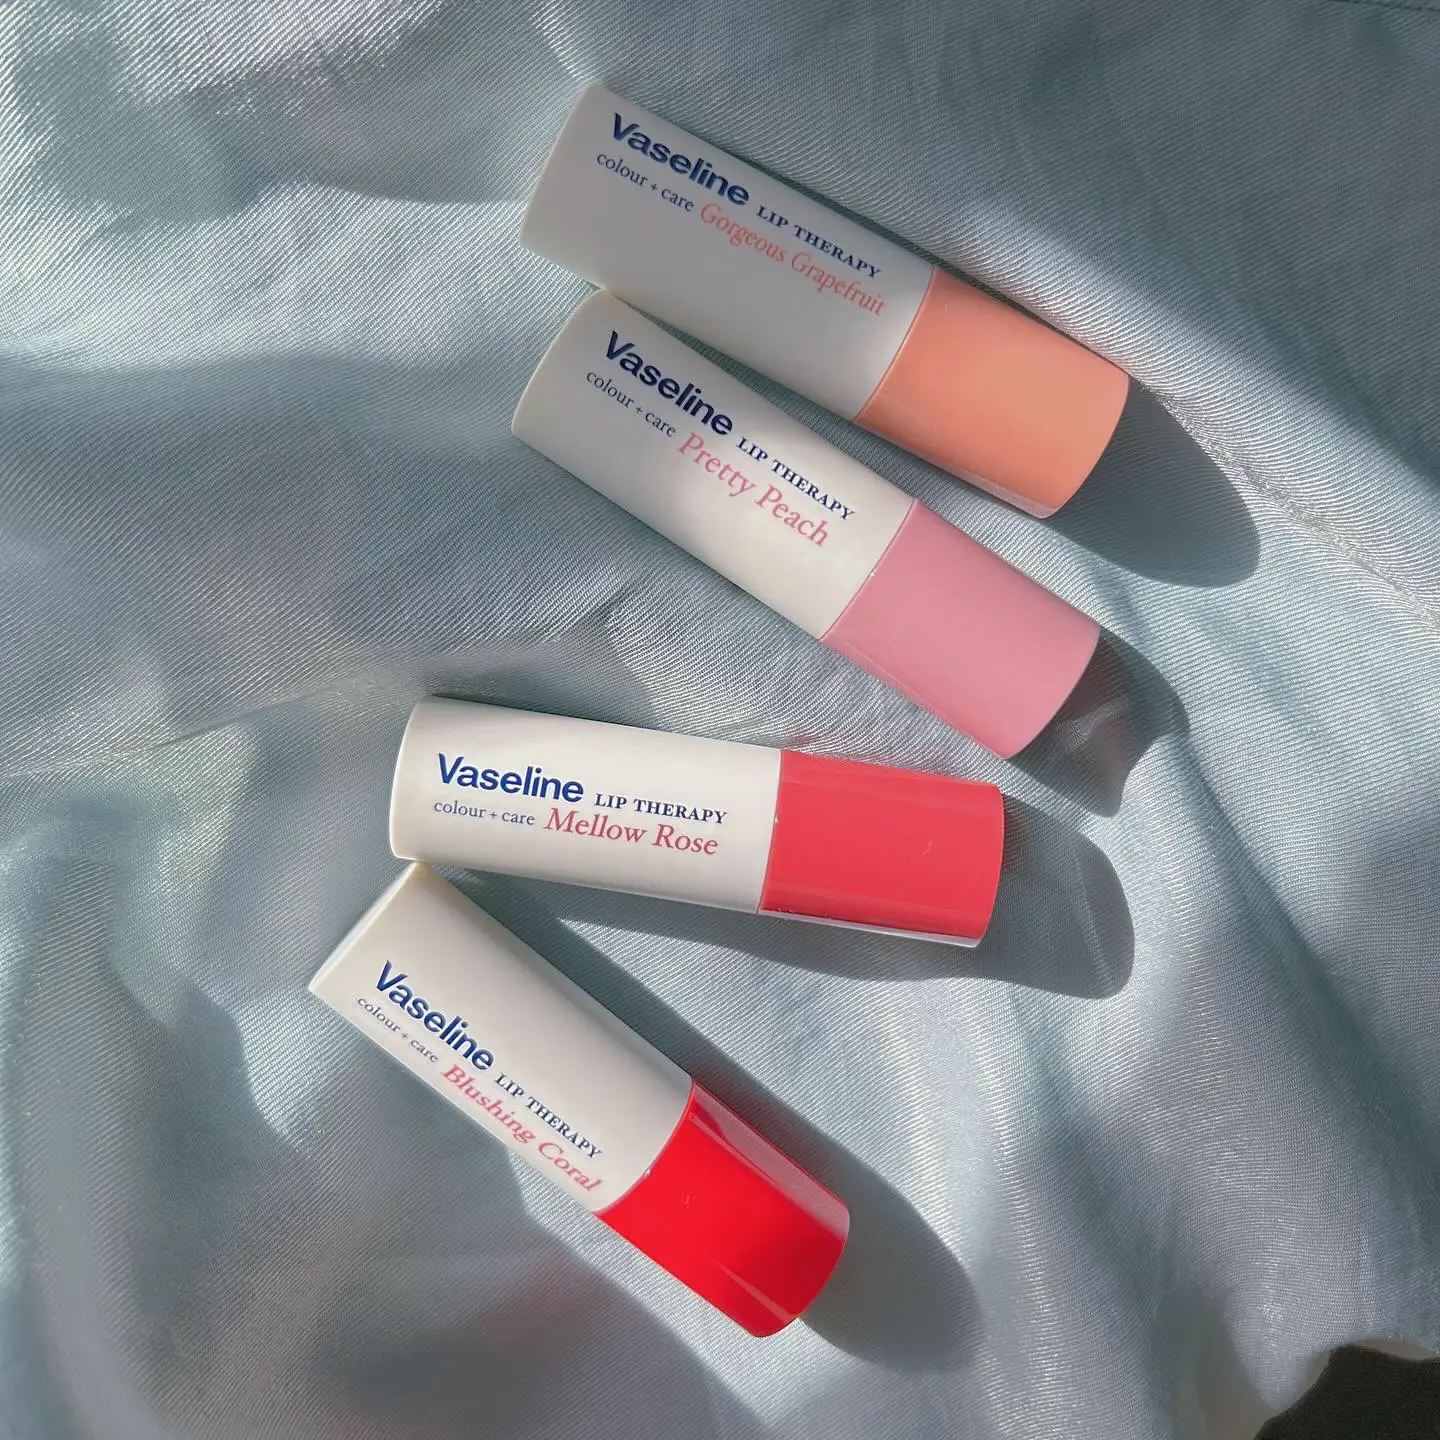 Vaseline Lip Therapy Colour Balm + Care in Pretty Peach 🍑 ✨ — a